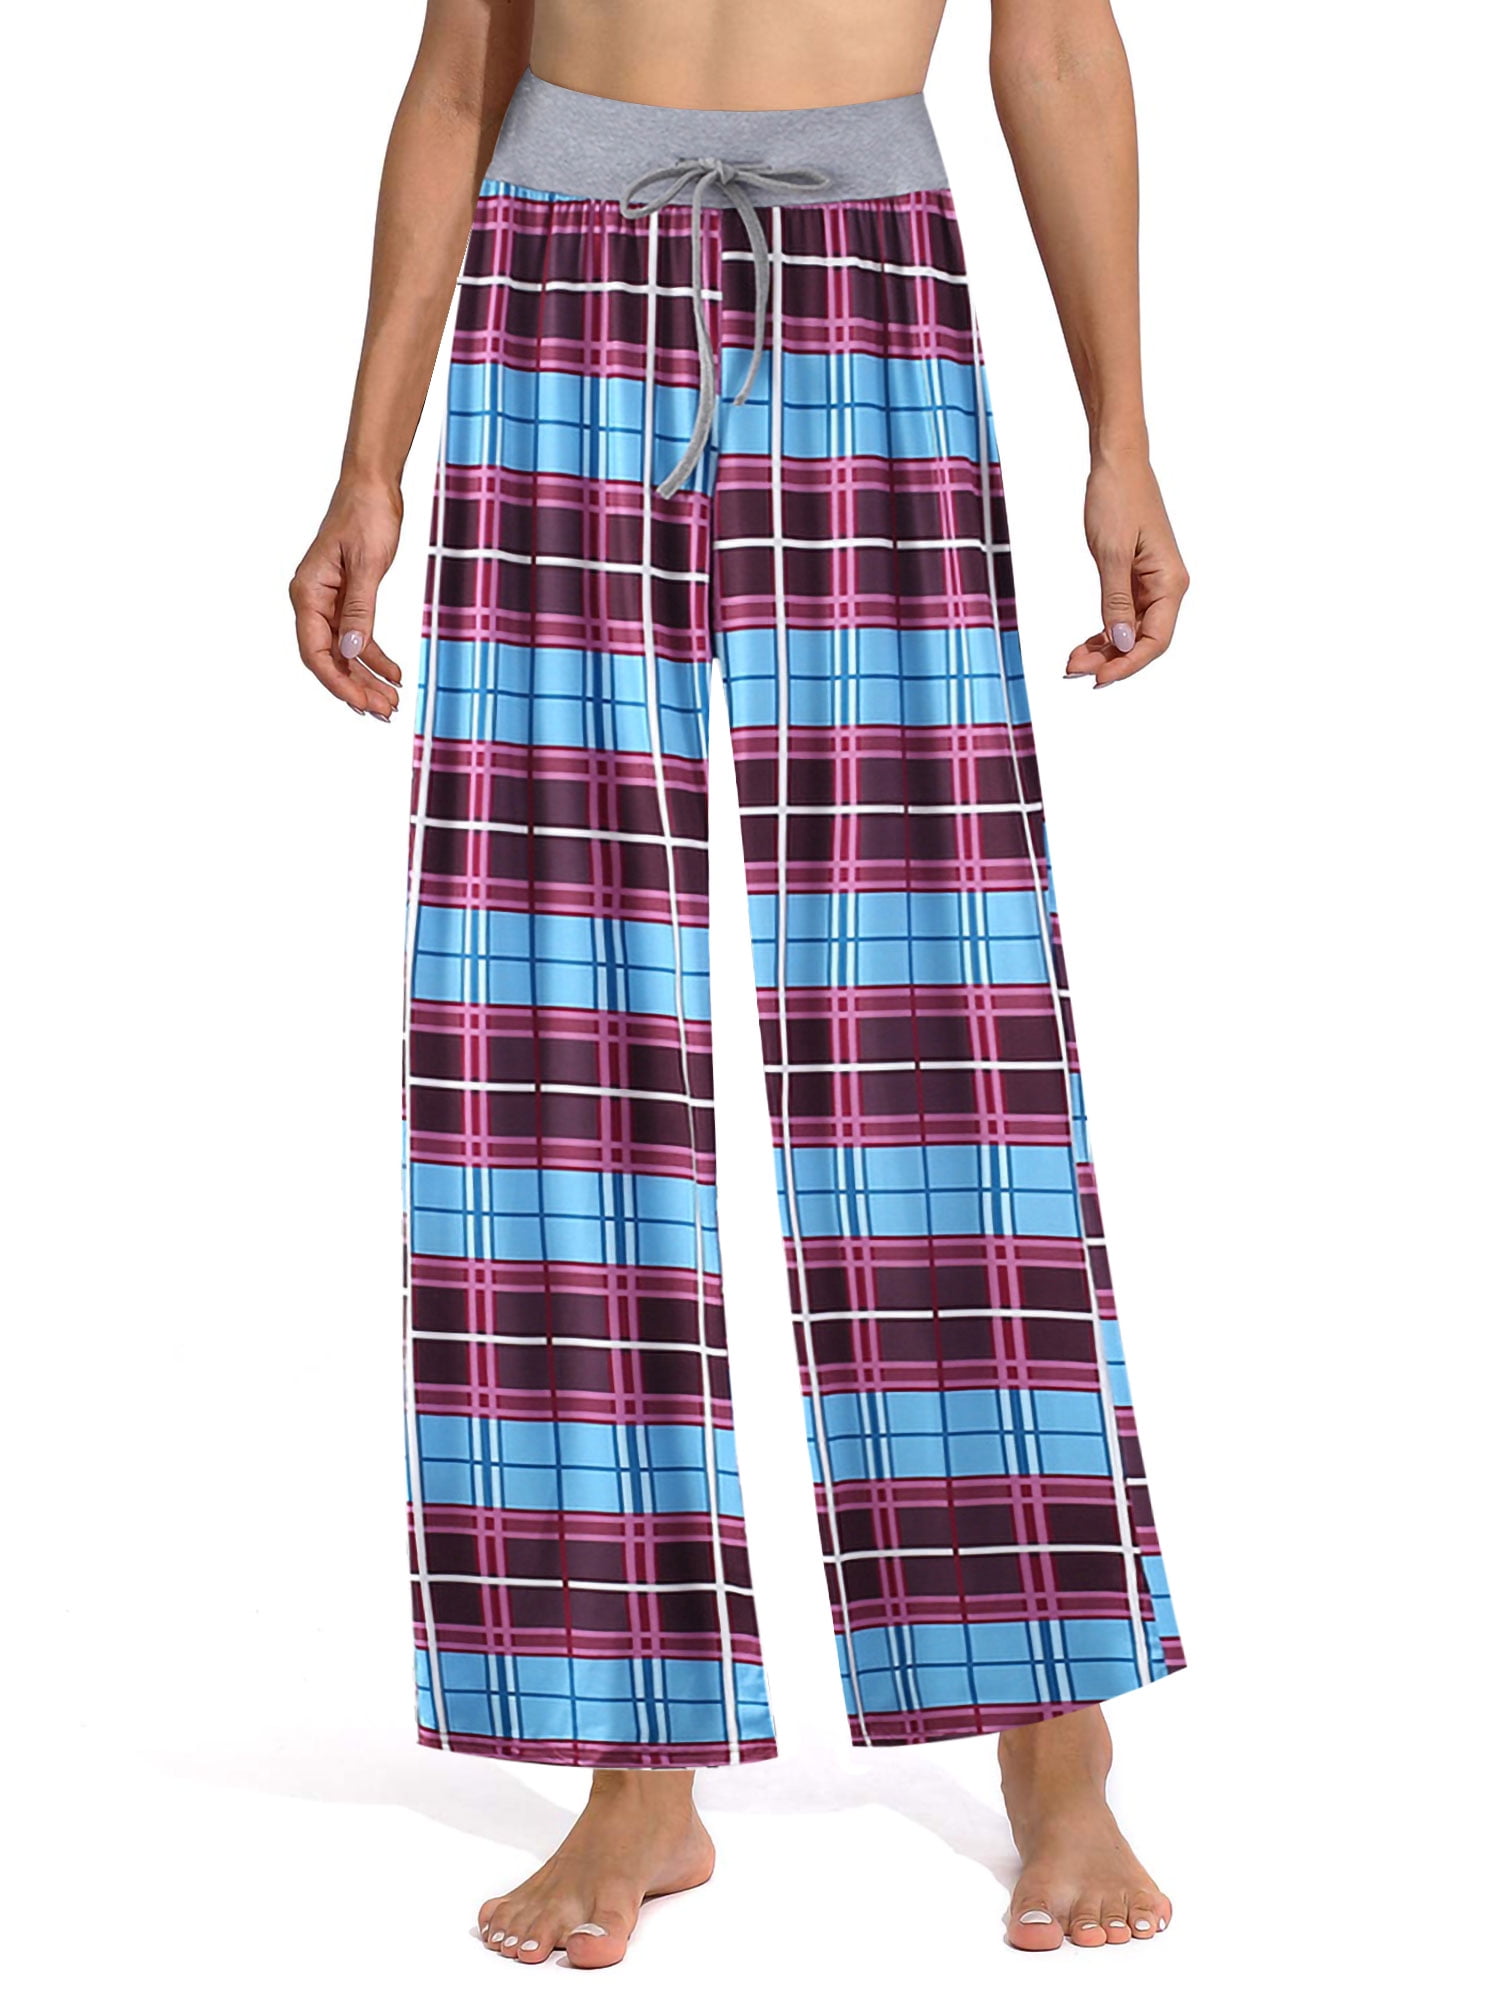 TIKTIK Womens Comfy Casual Wide Leg Pajama Pants Palazzo Lounge Pants High Waisted Yoga Pants S-4XL 